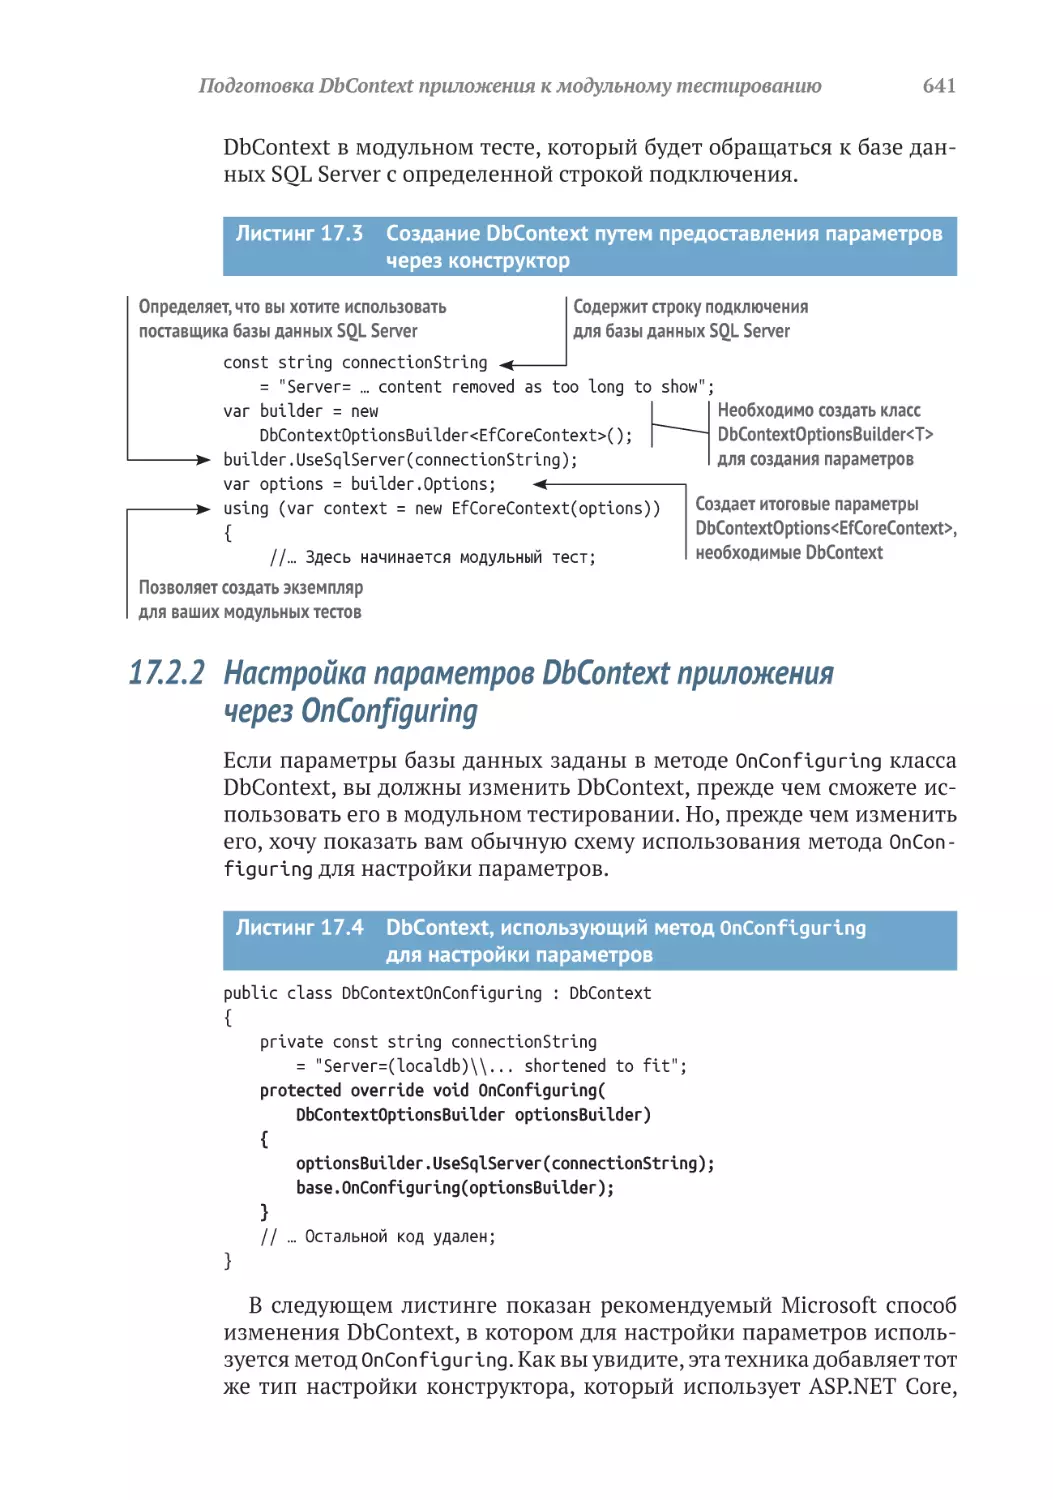 17.2.2	Настройка параметров DbContext приложения через OnConfiguring